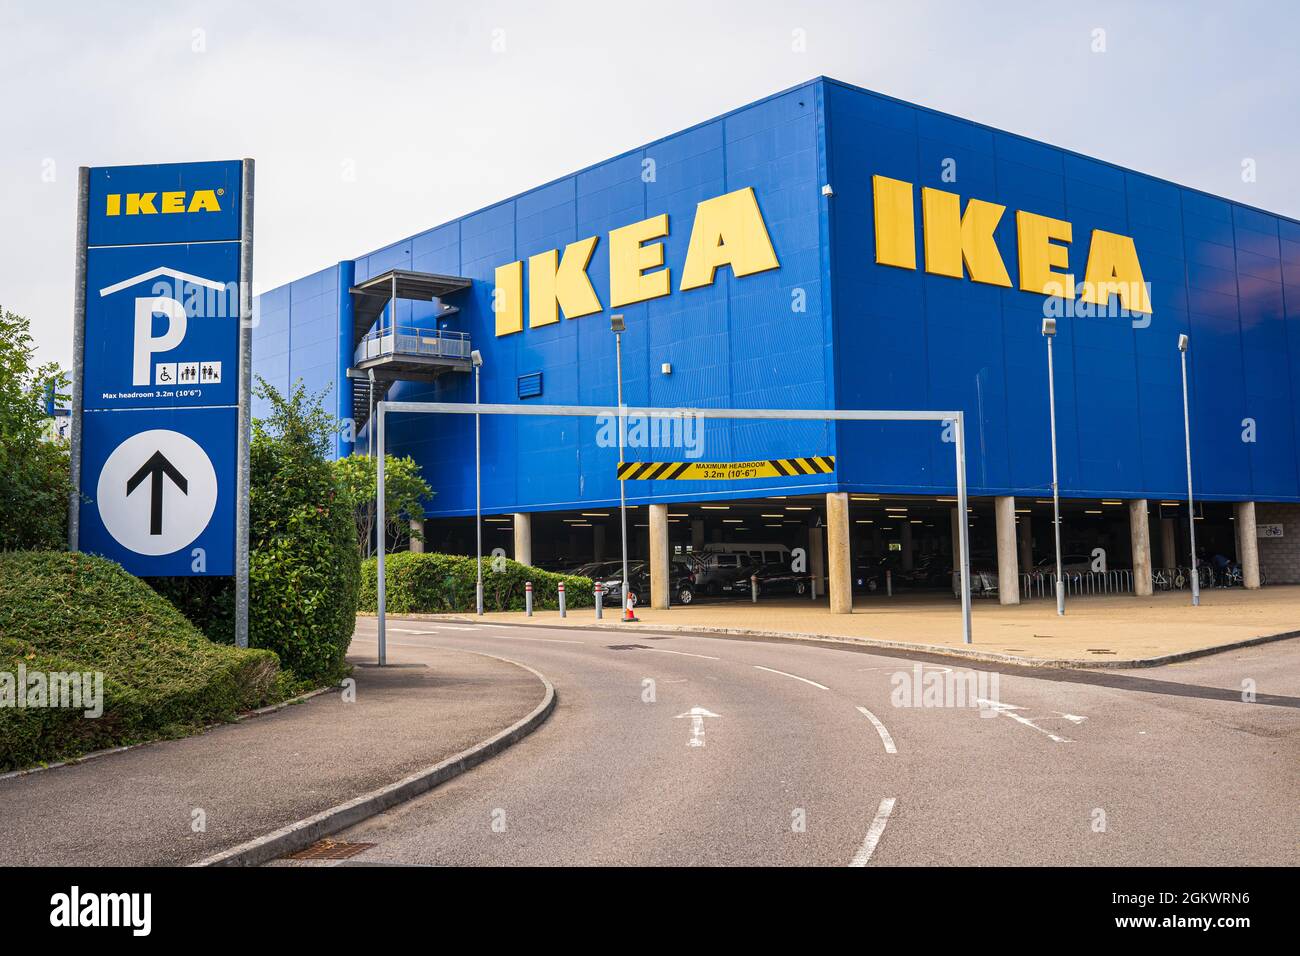 IKEA maison ameublement magasin bâtiment extérieur, façade bleue avec logo  jaune. Cardiff, pays de Galles, Royaume-Uni - 13 septembre 2021 Photo Stock  - Alamy